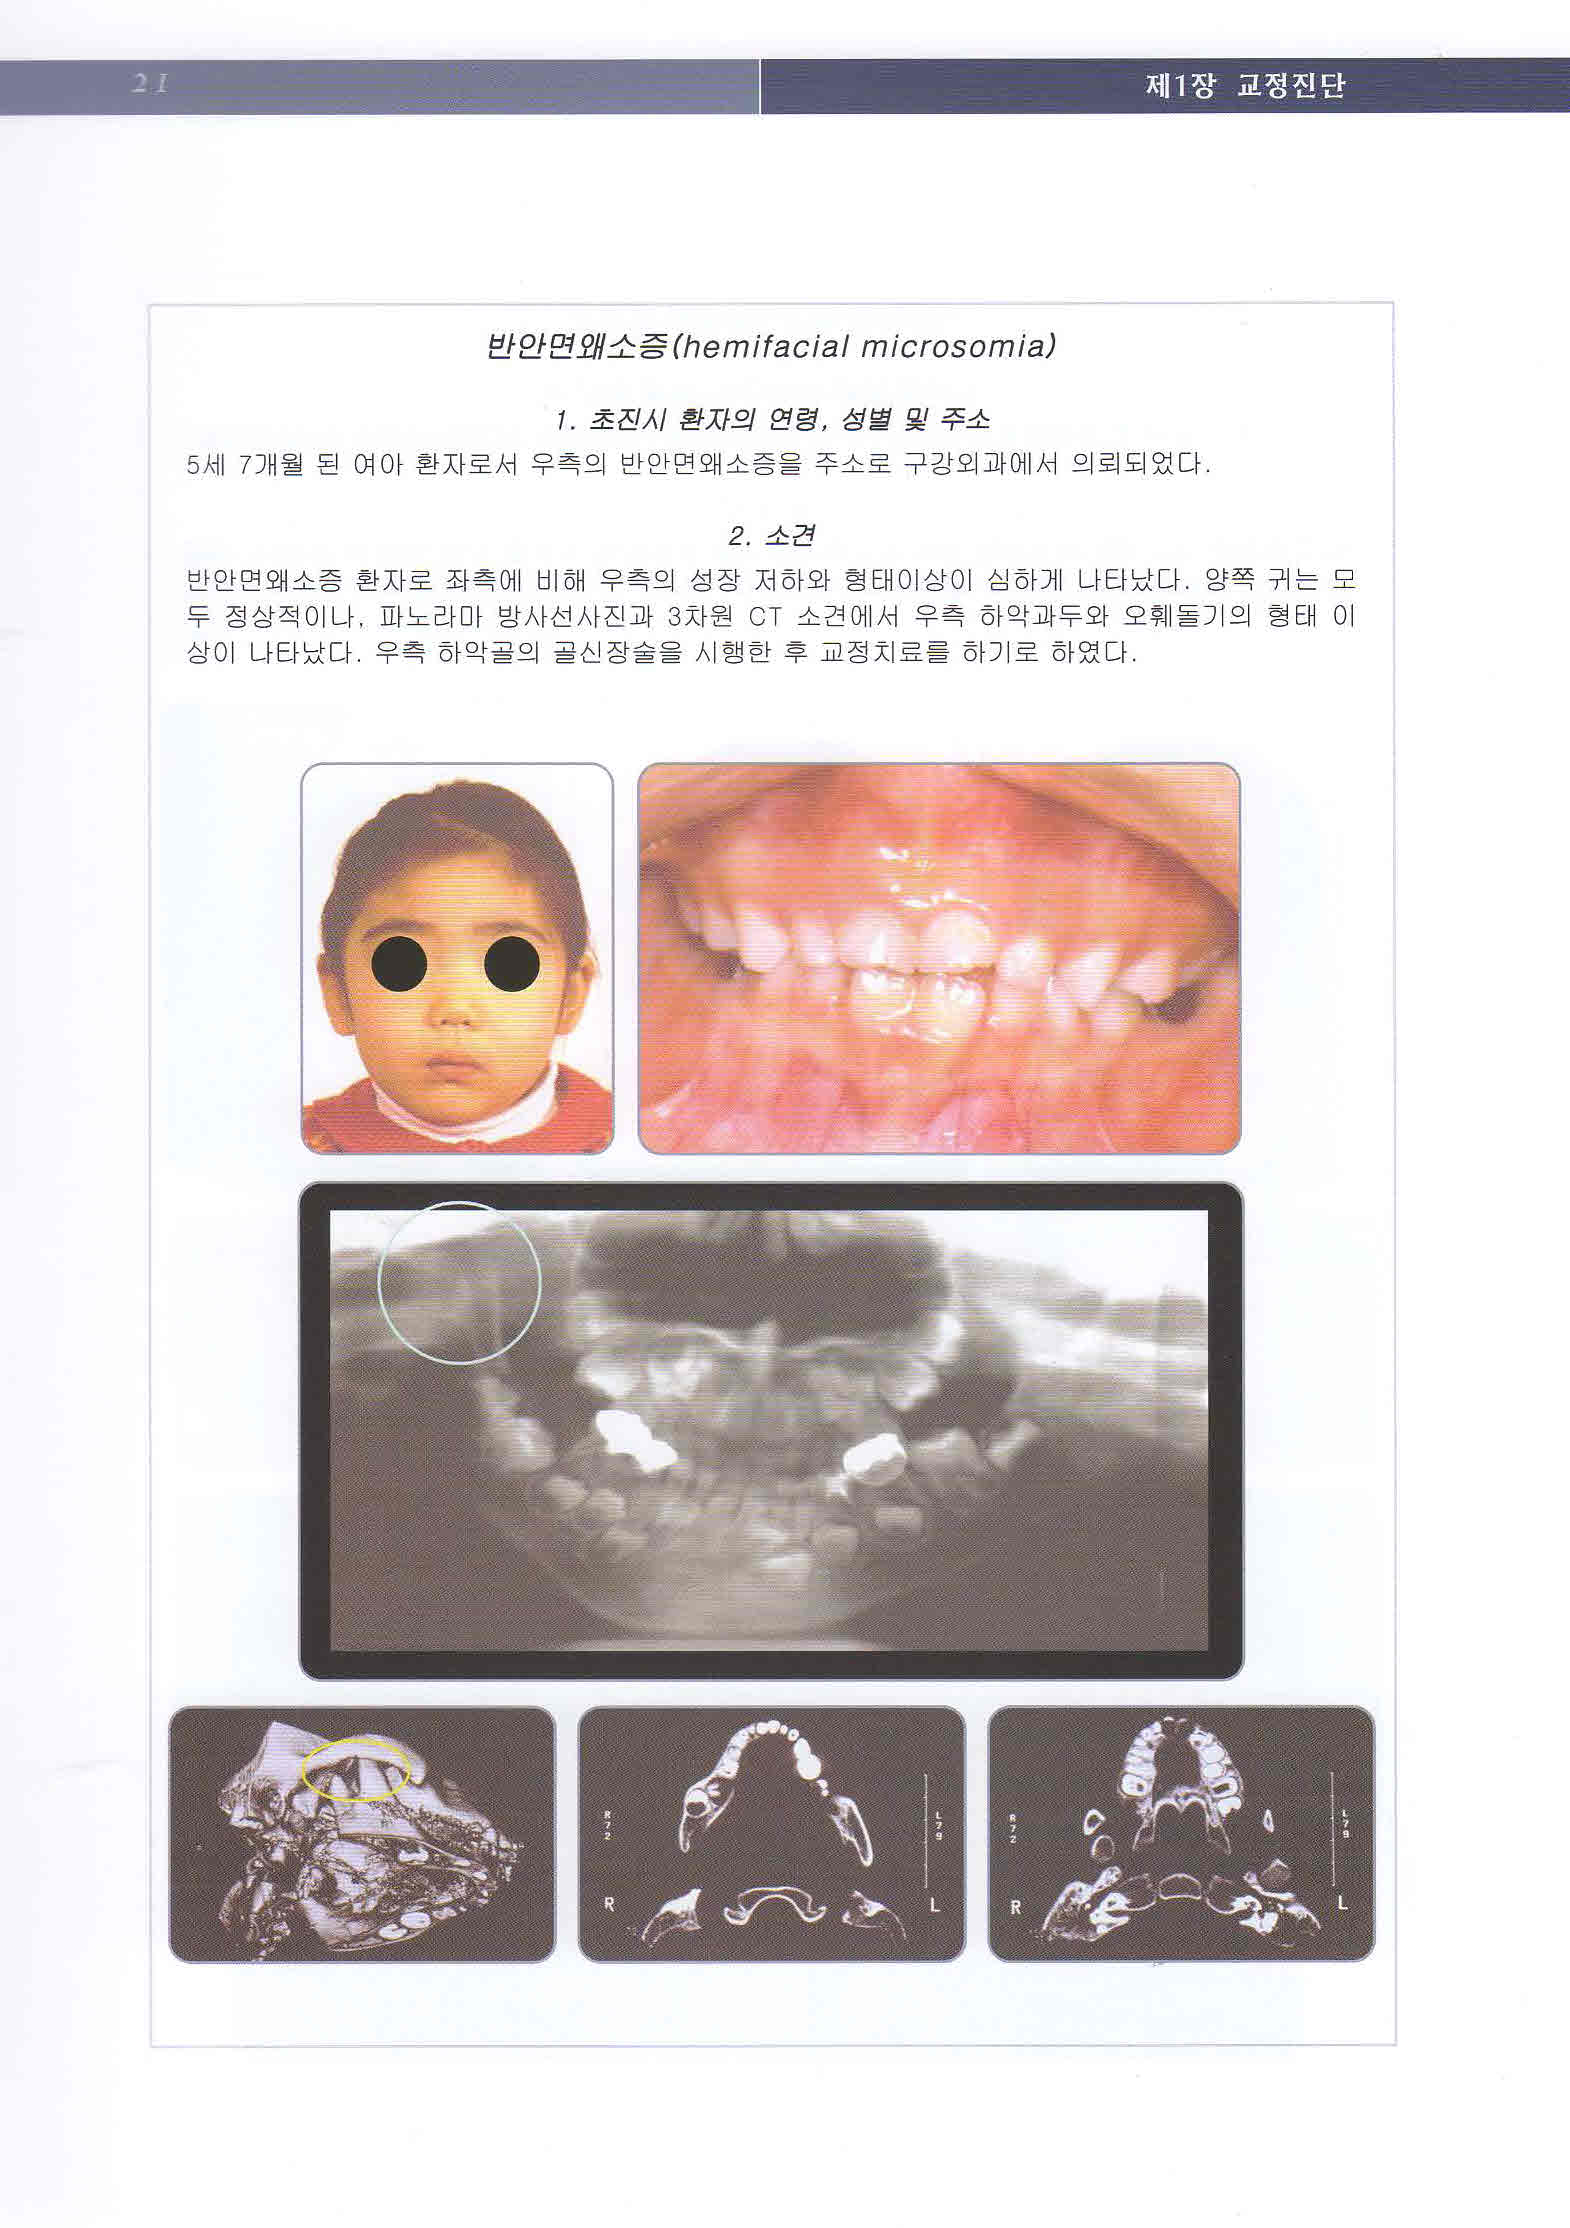 최신 치과교정 진단학 - Current Orthodontic Diagnosis -